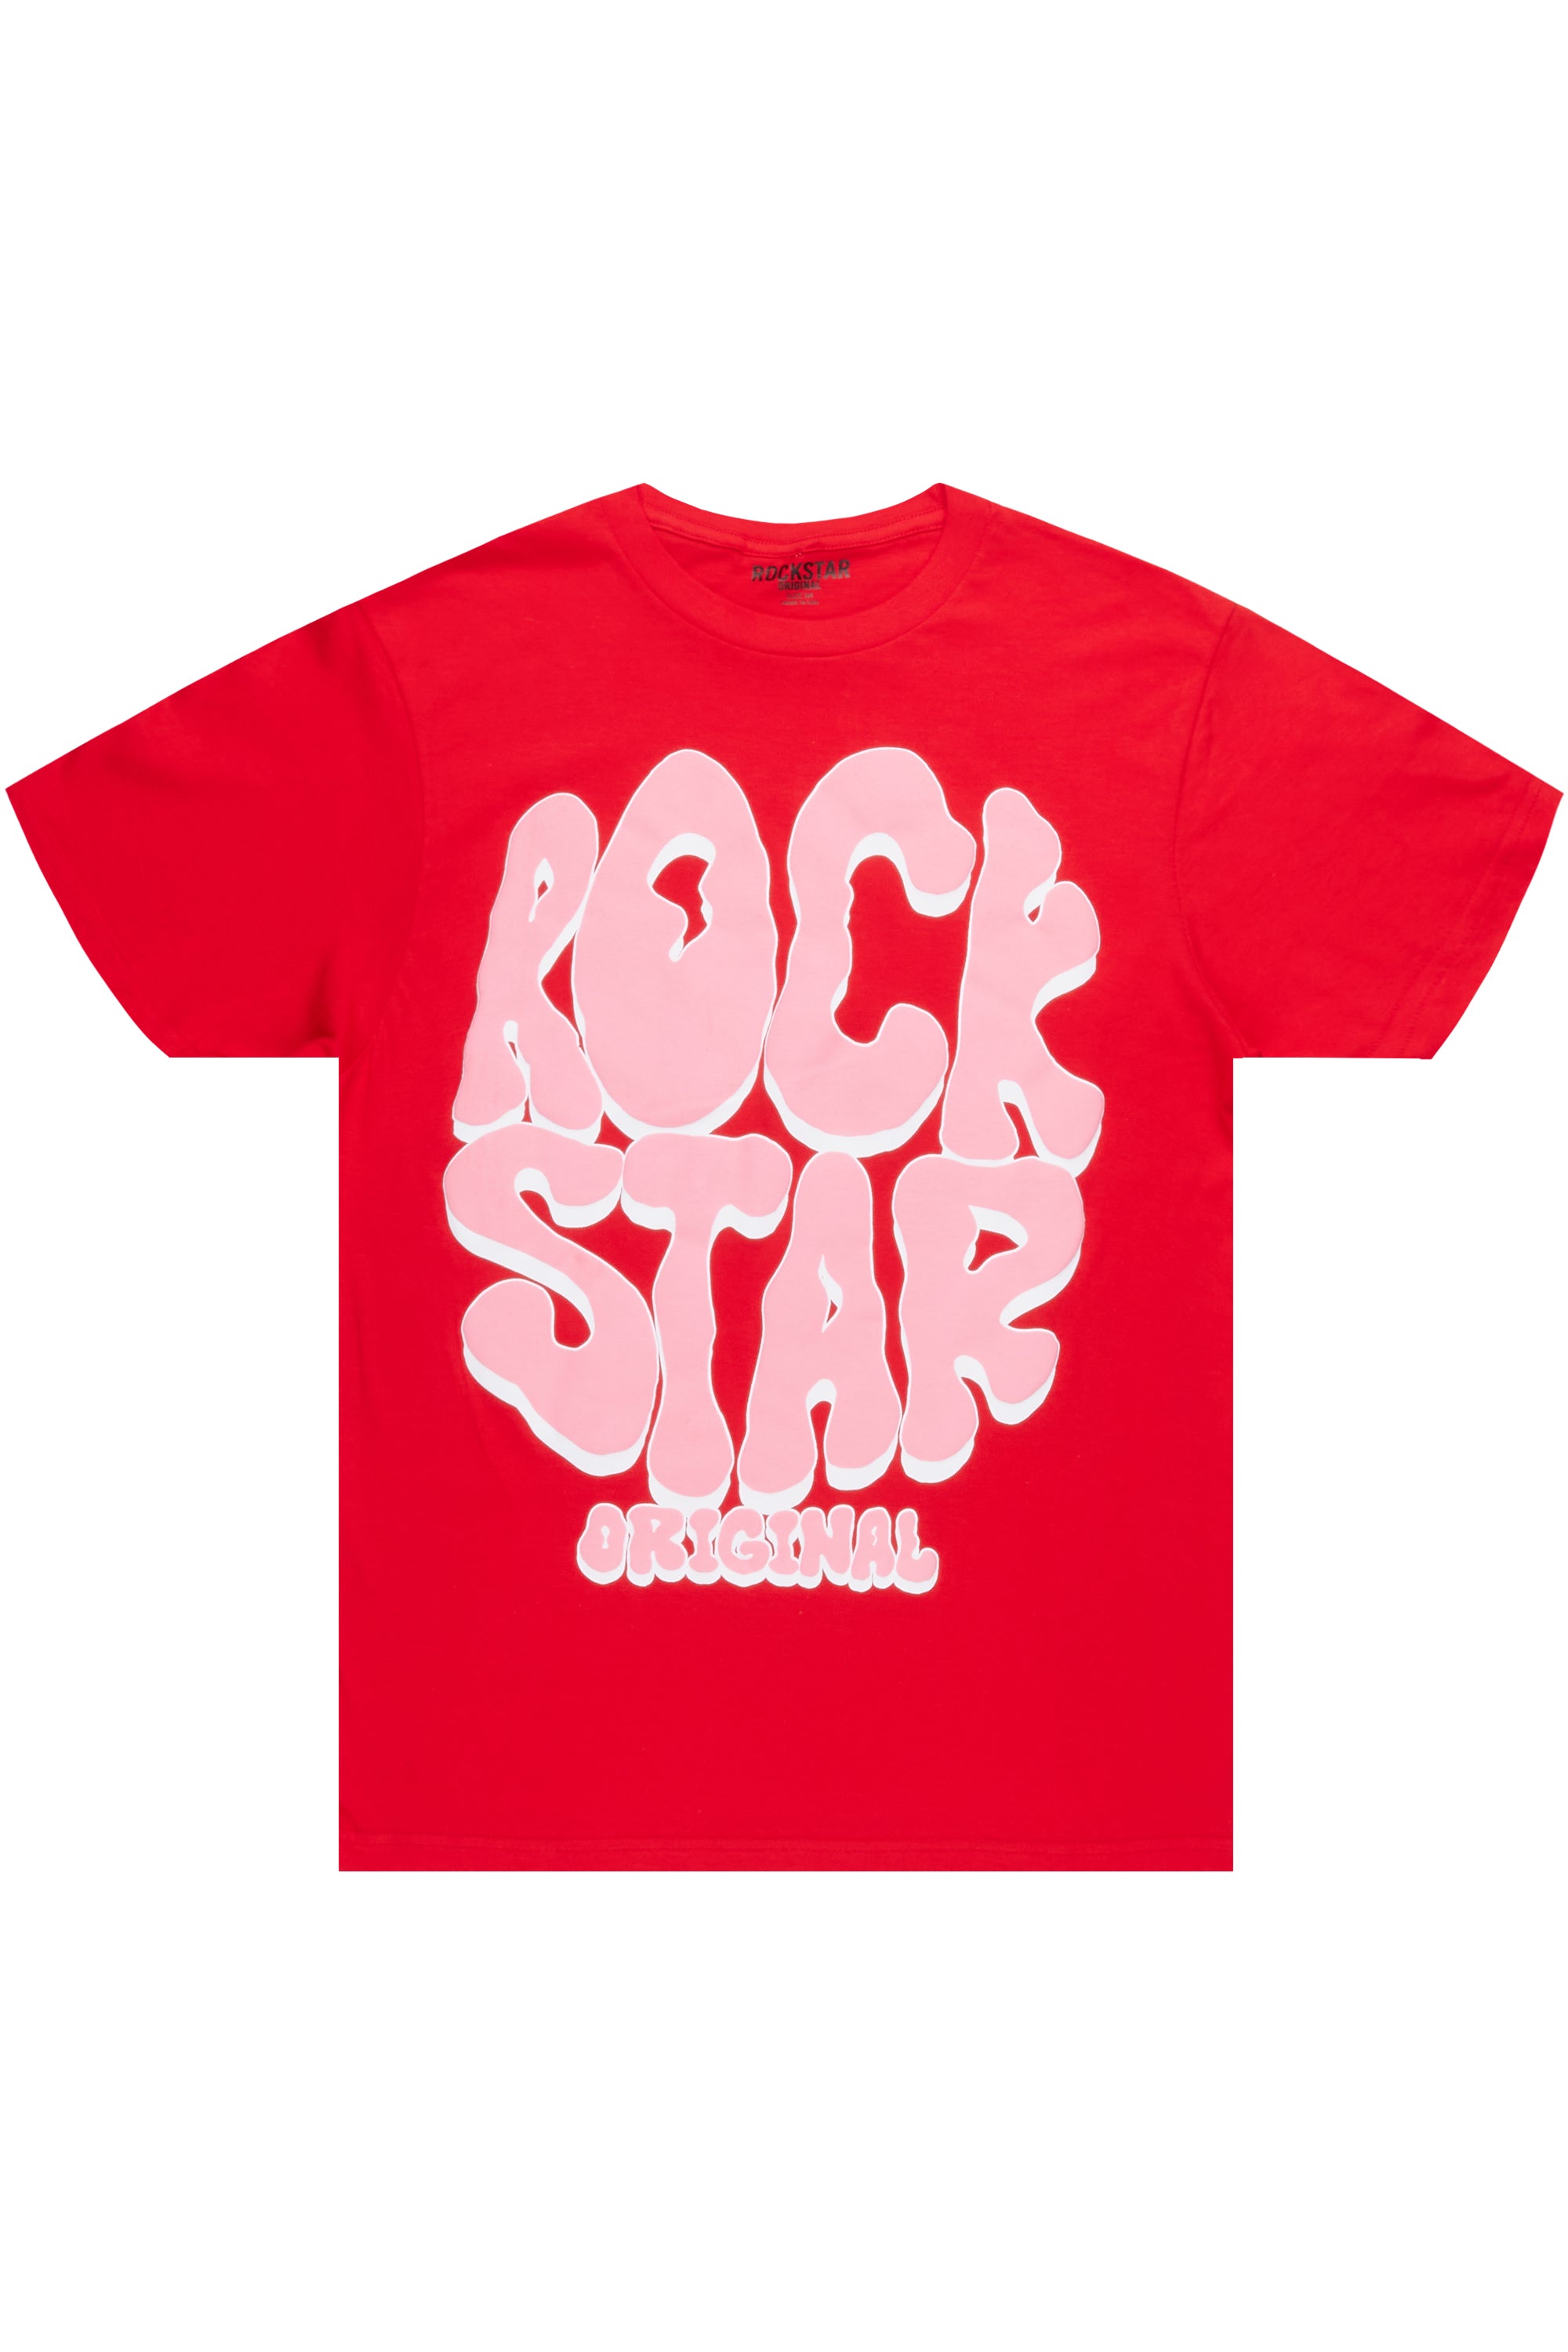 Warblen Red Graphic T-Shirt